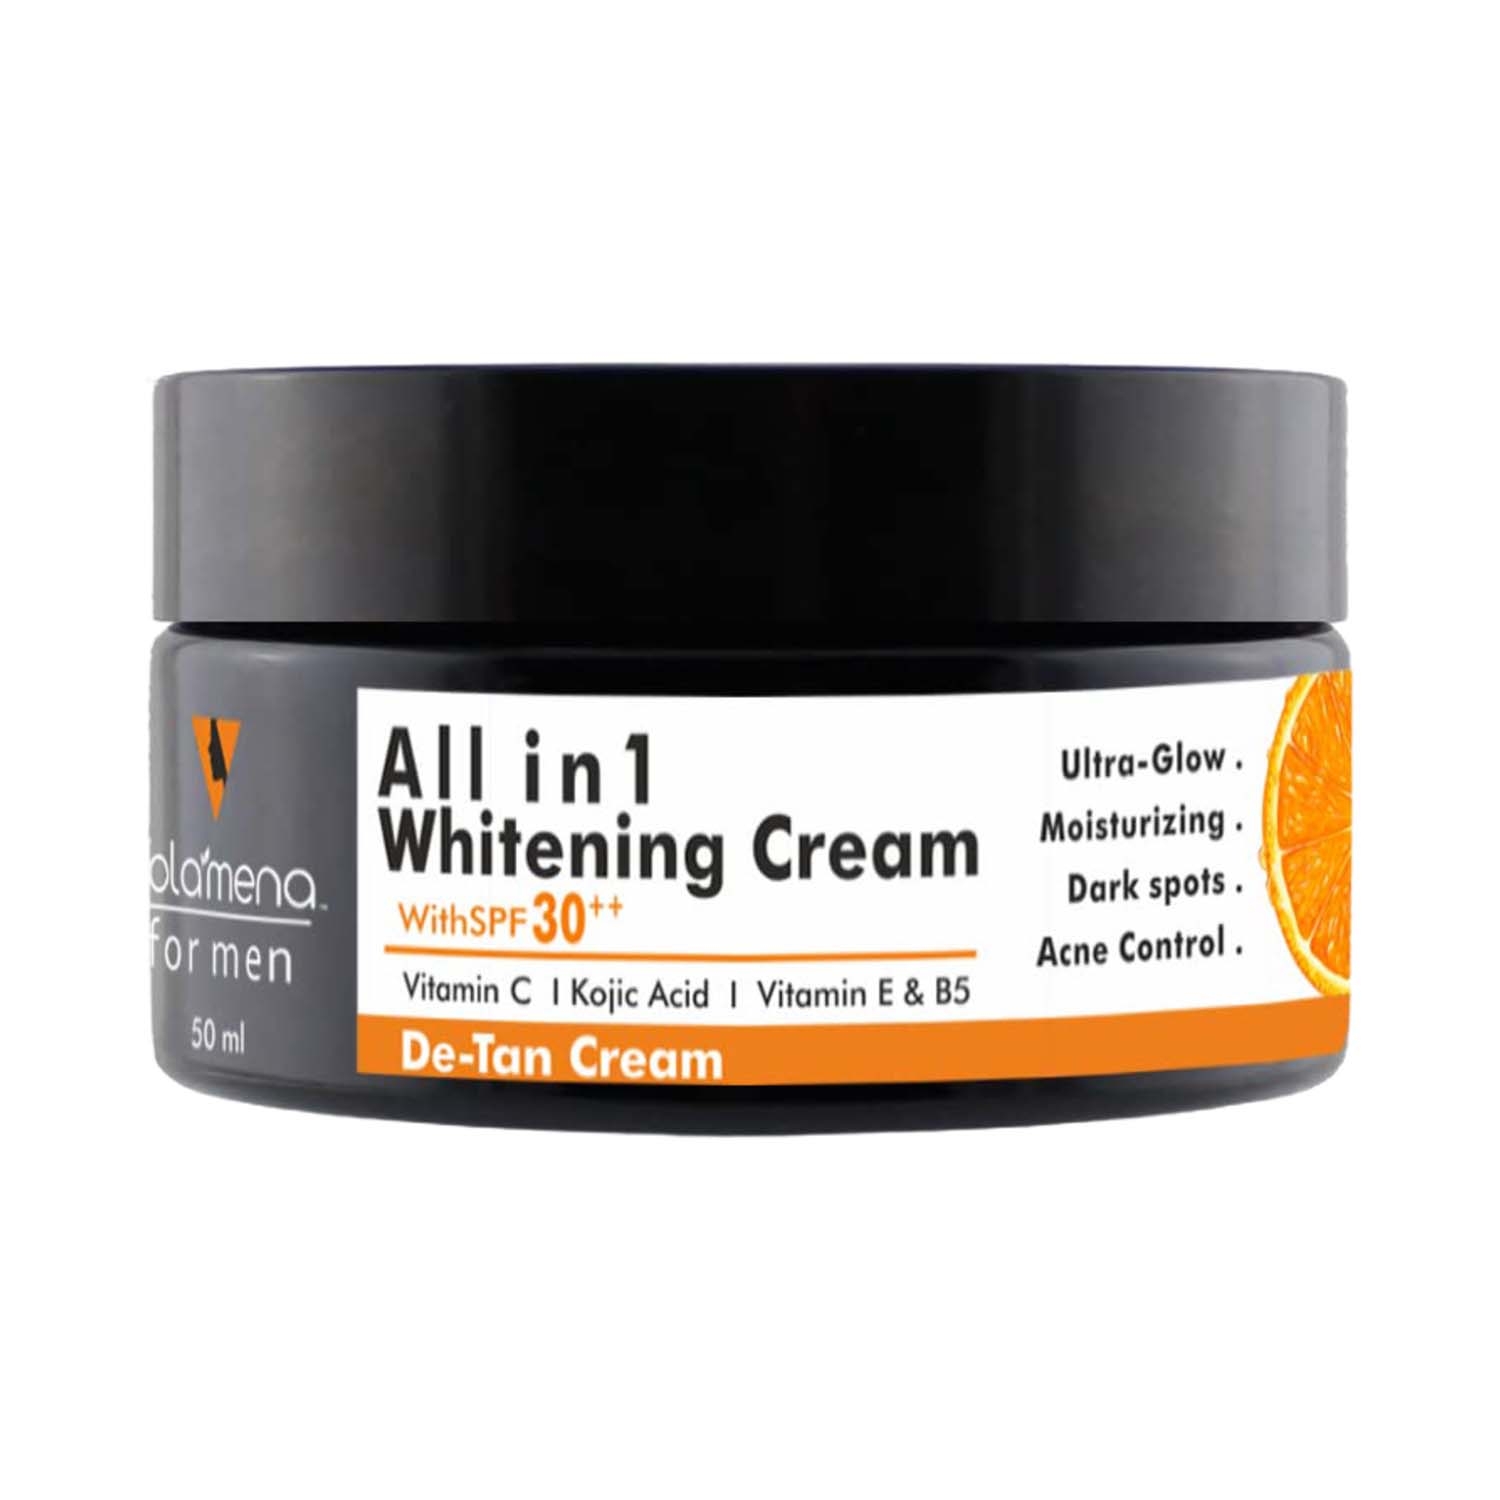 Volamena | Volamena Men’s All In 1 Whitening Cream With SPF 30 ++ (50ml)